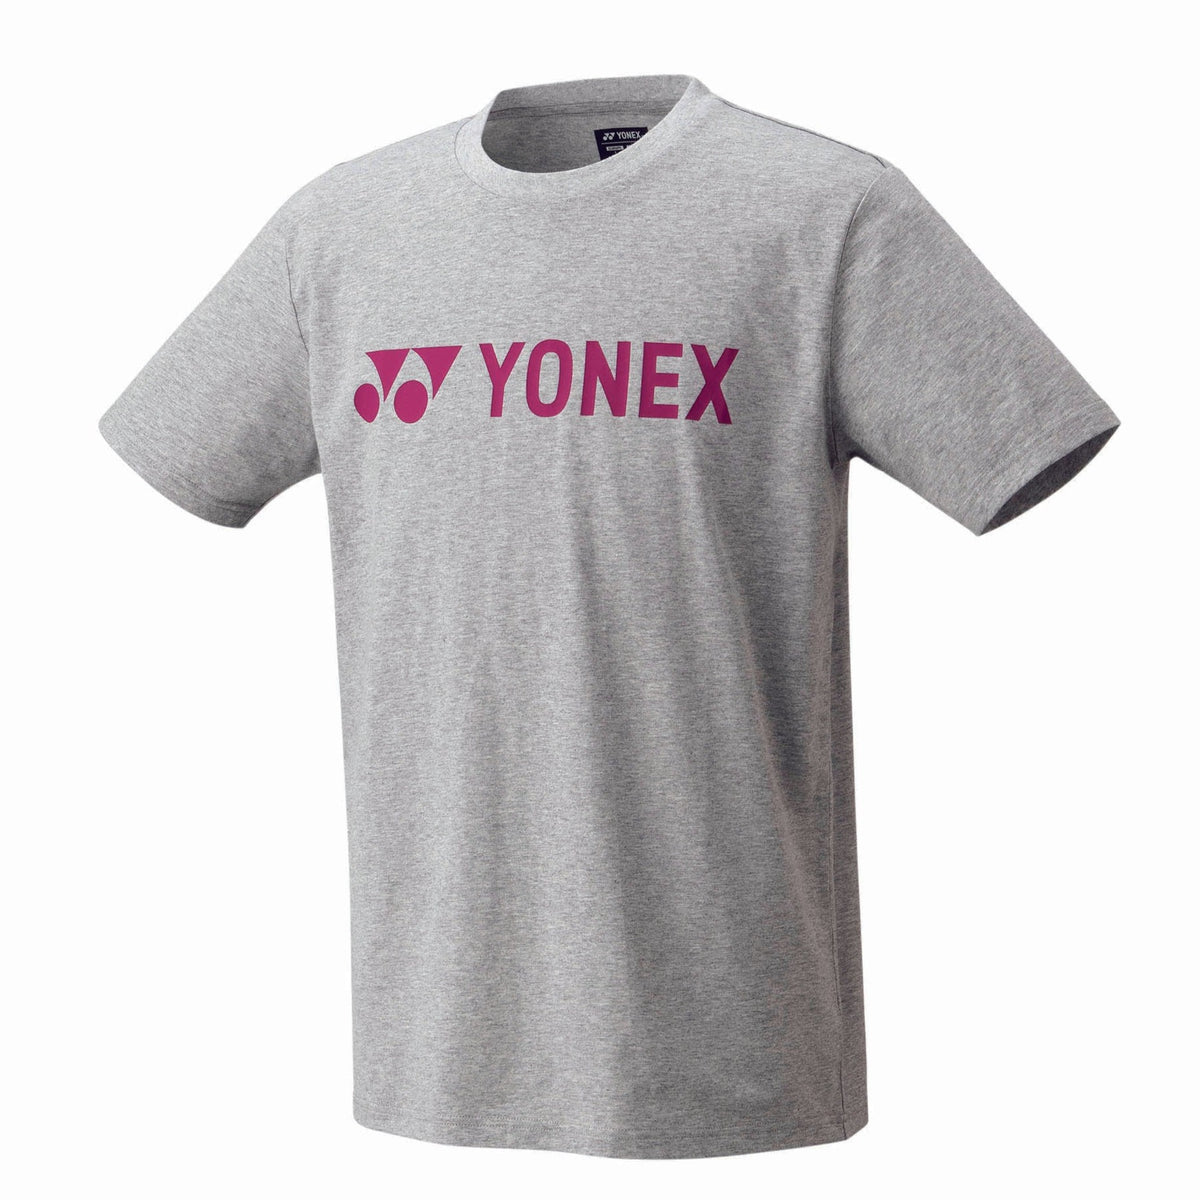 Yonex Unisex Shirt grau